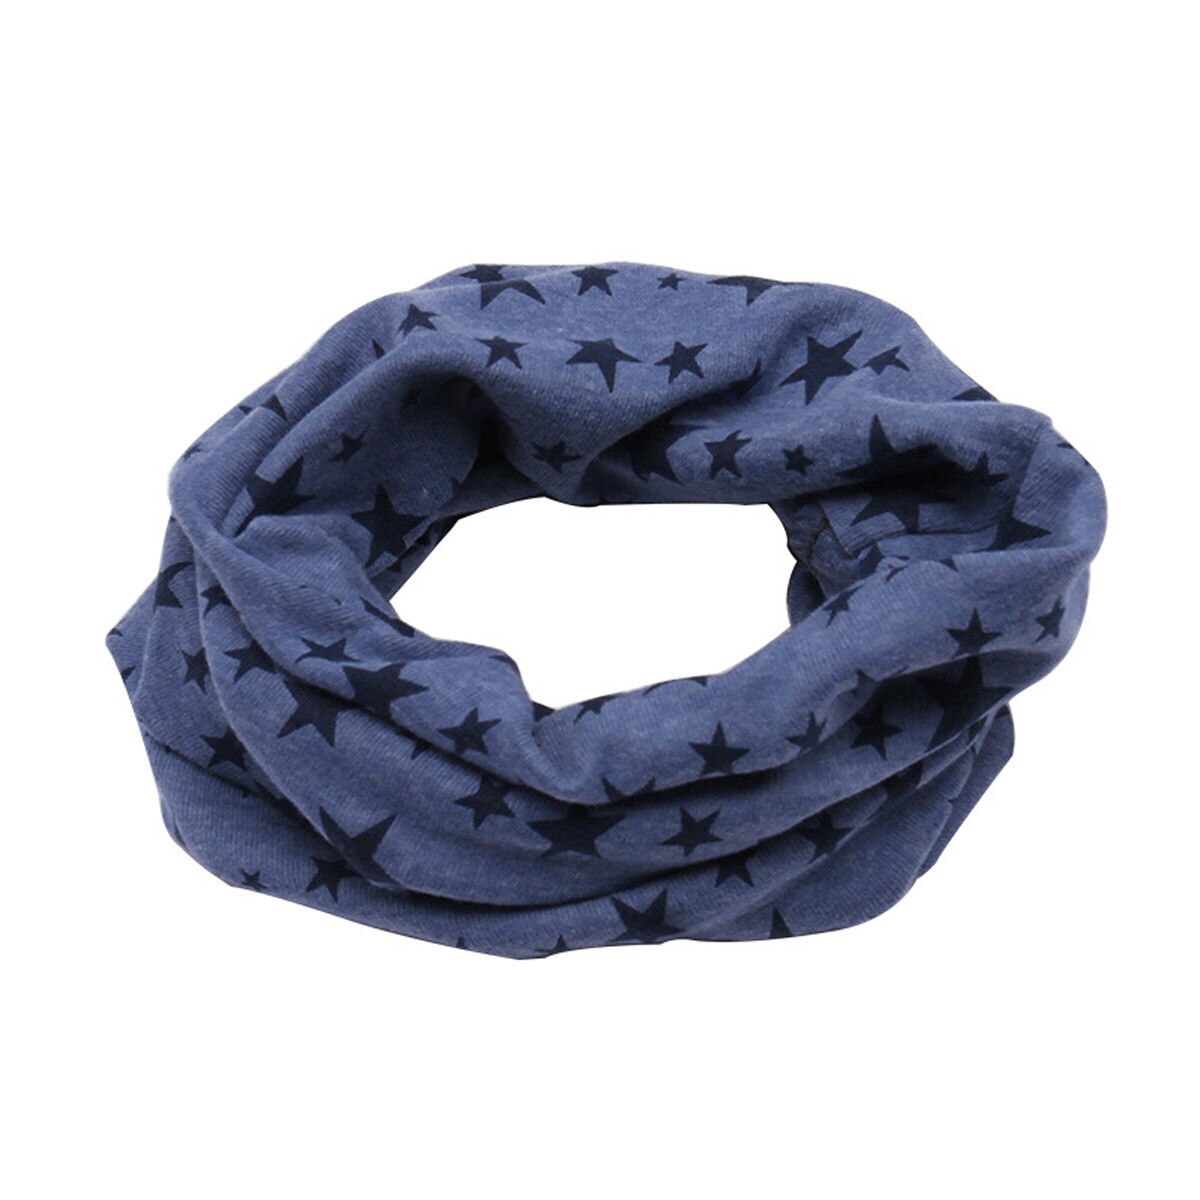 Barn børn vinter varm bomuld snood tørklæde sjal drenge piger hals varm halstørklæde